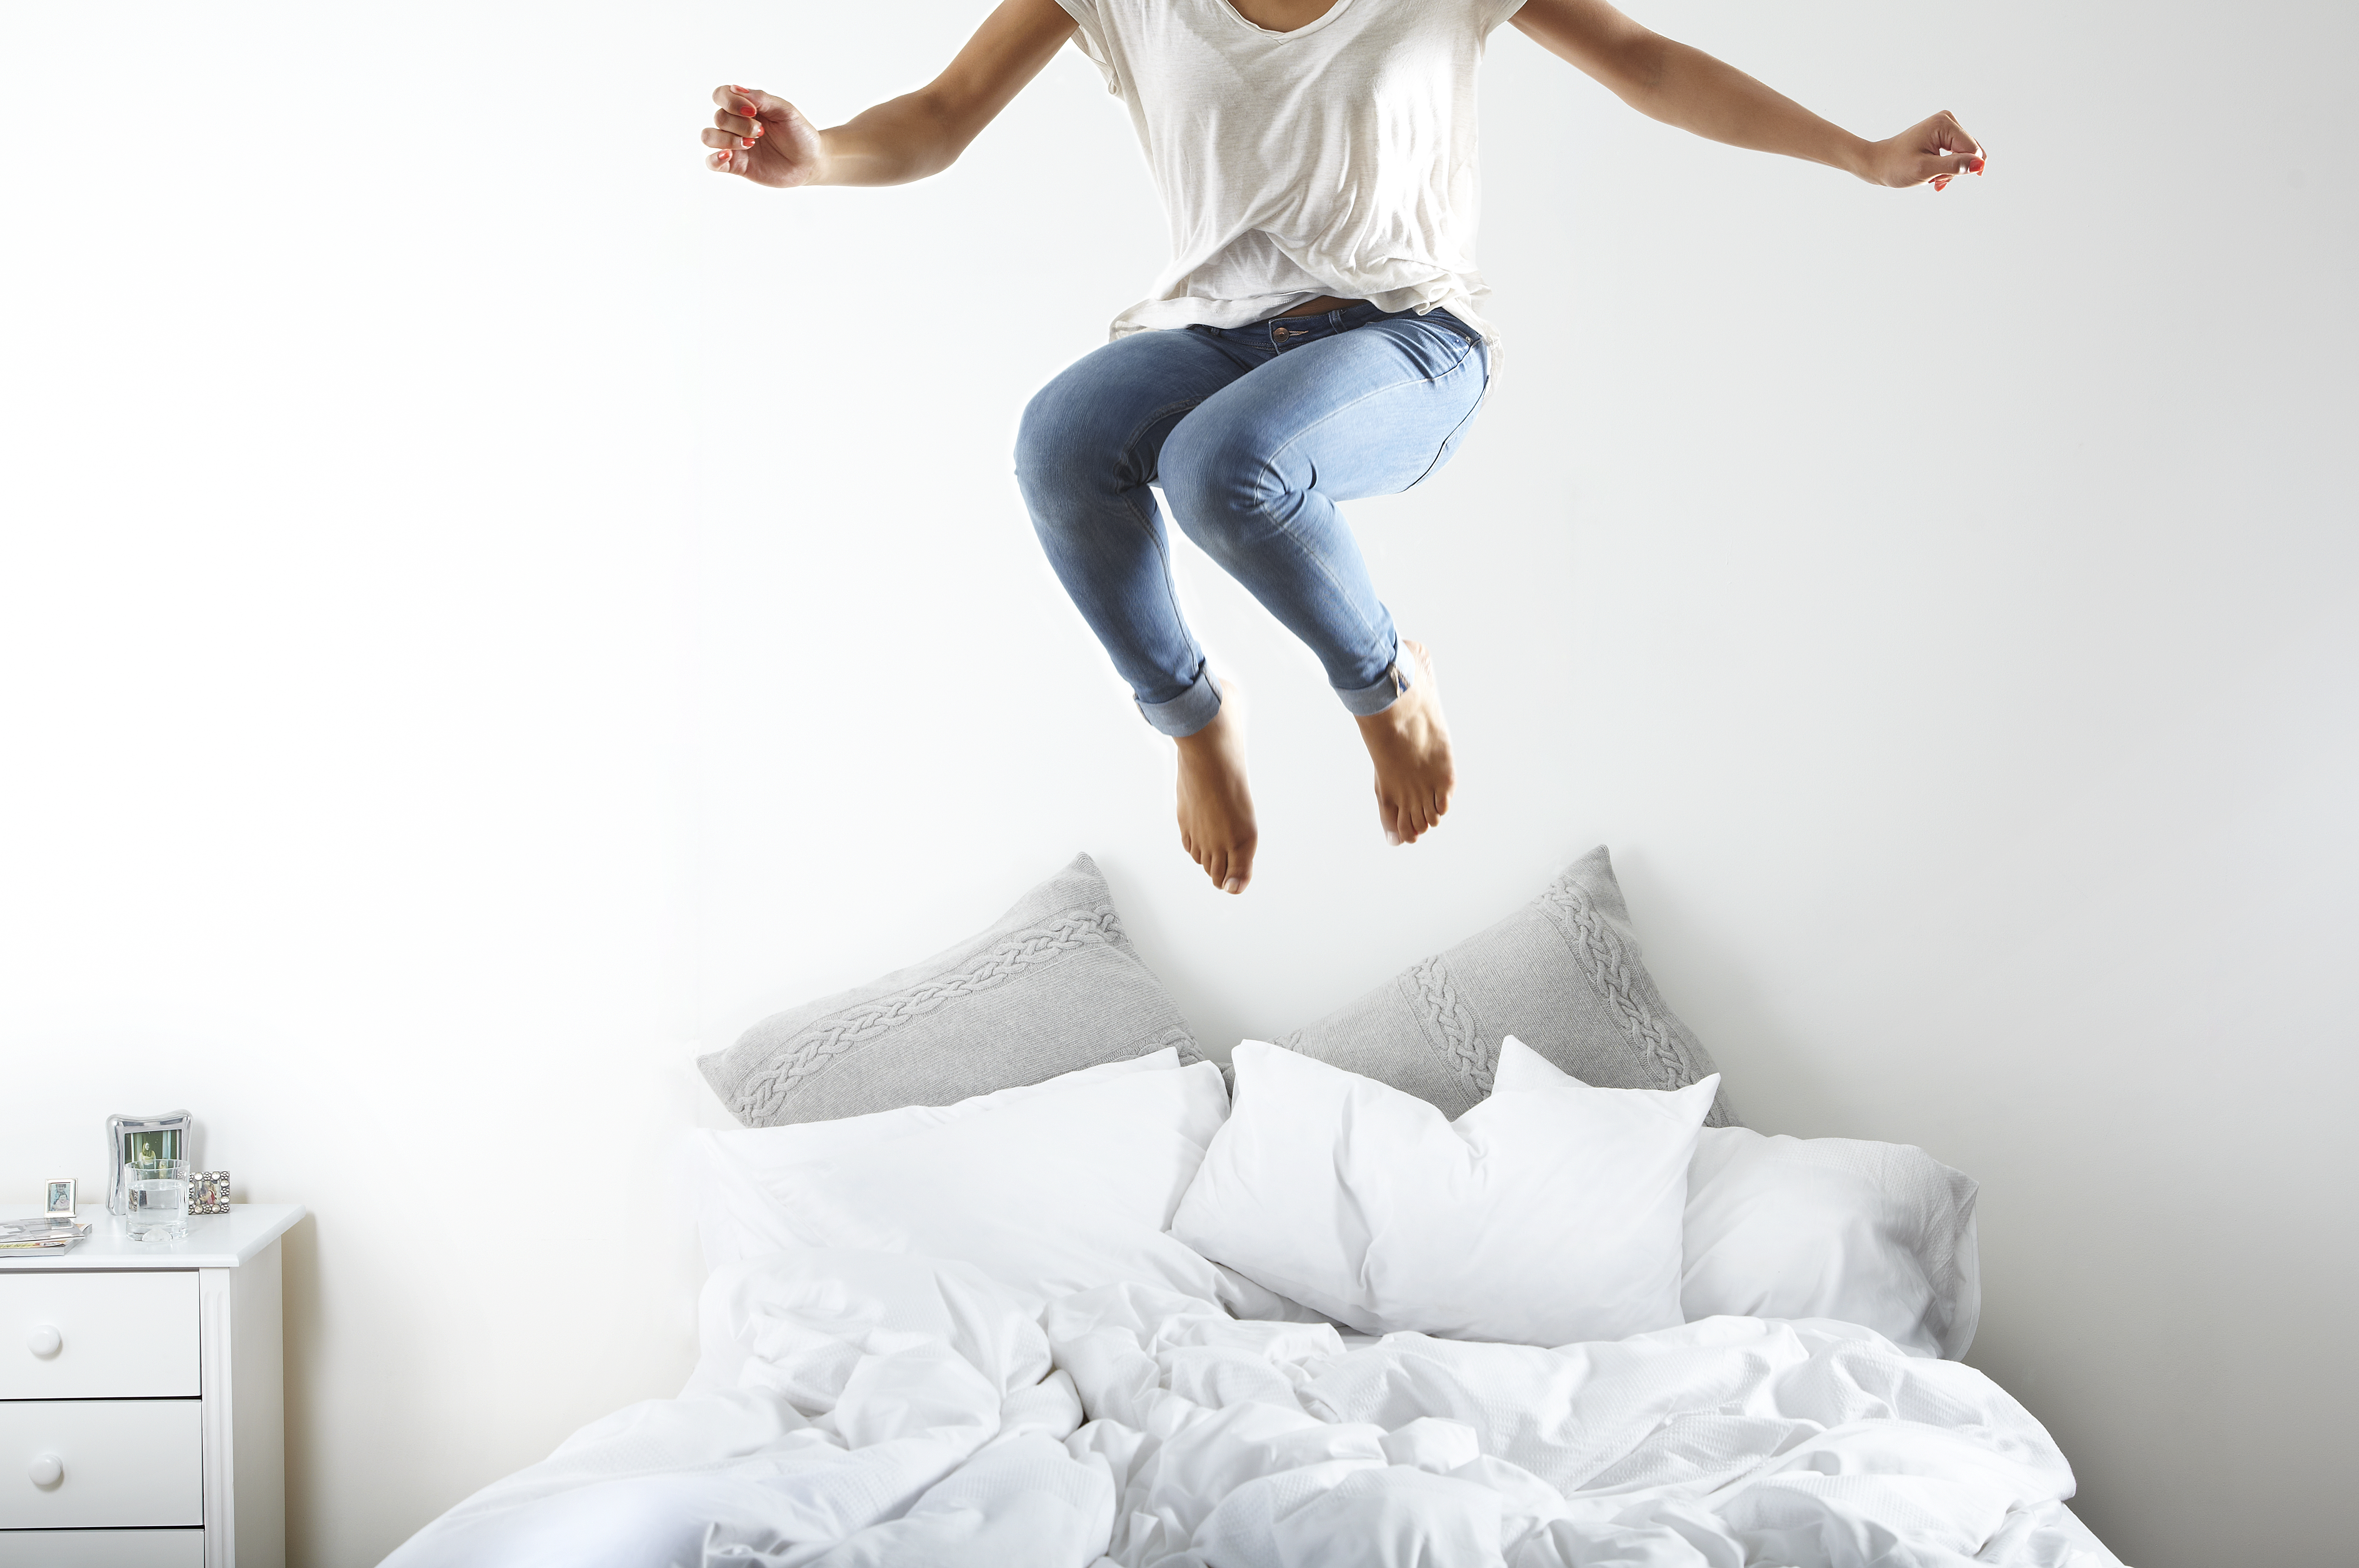 Retrato de mujer saltando en la cama | Foto: Getty Images